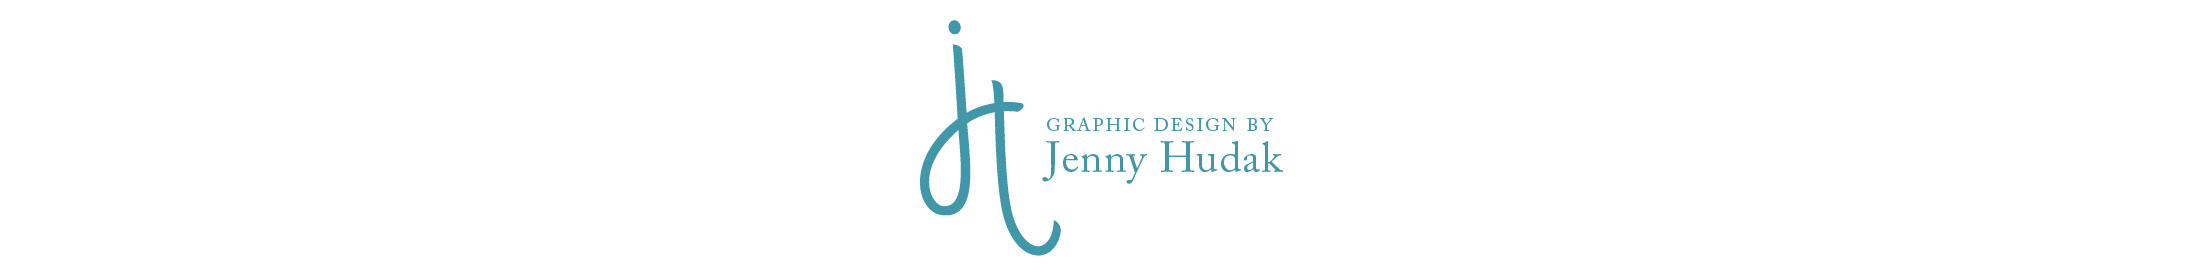 Banner de perfil de Jennifer Hudak